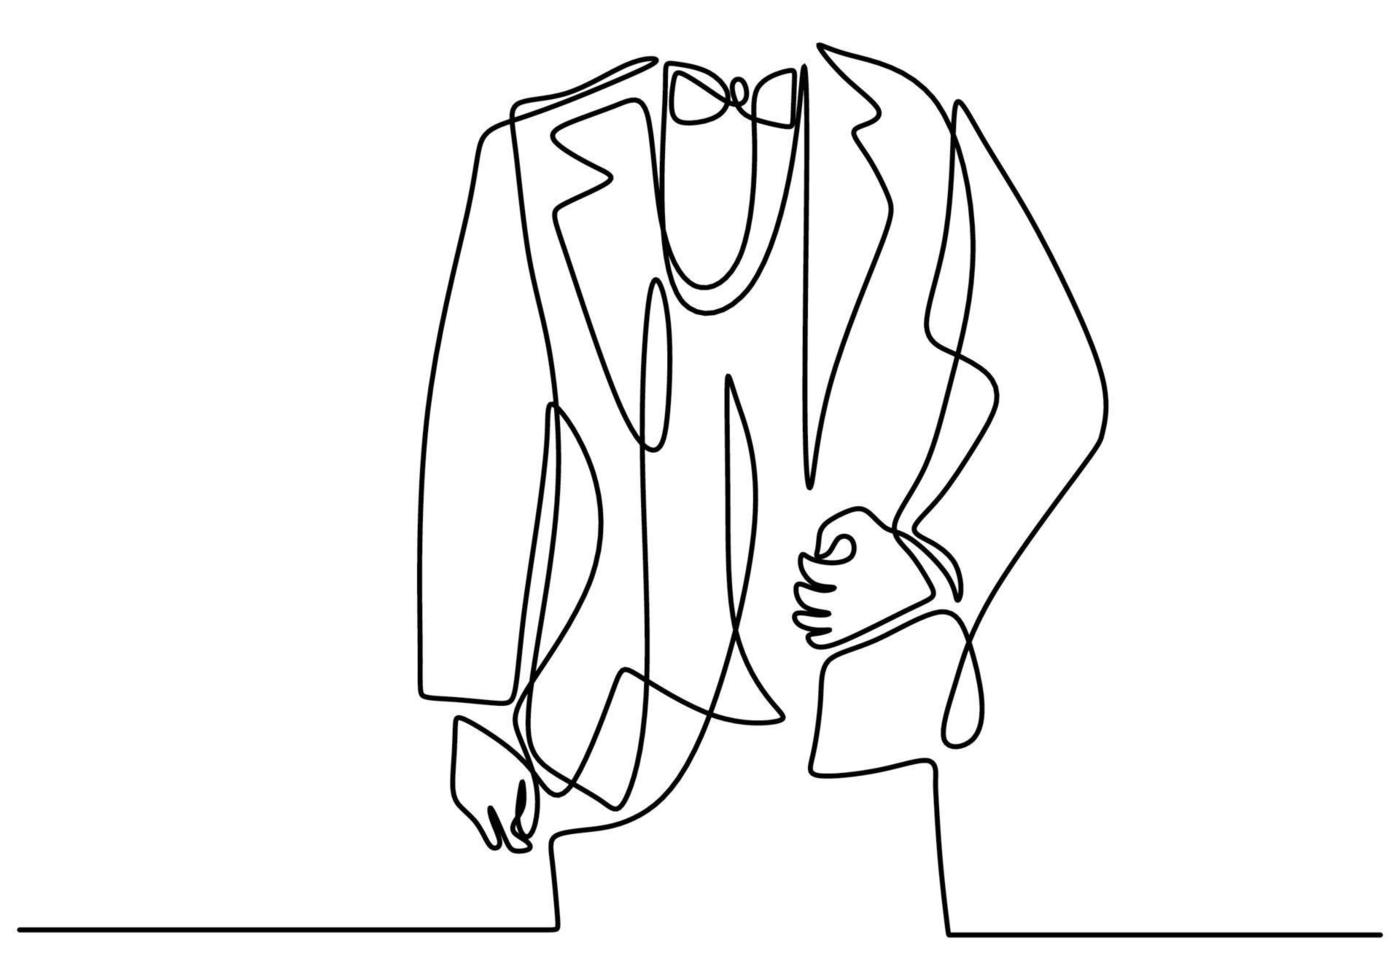 eine durchgehende Strichzeichnung der Herrenjacke mit Schleifen. junger Mann mit einem Party Dresscode im eleganten Stil lokalisiert auf weißem Hintergrund. Groomsman im Hochzeitsfeierkonzept. Vektorillustration vektor